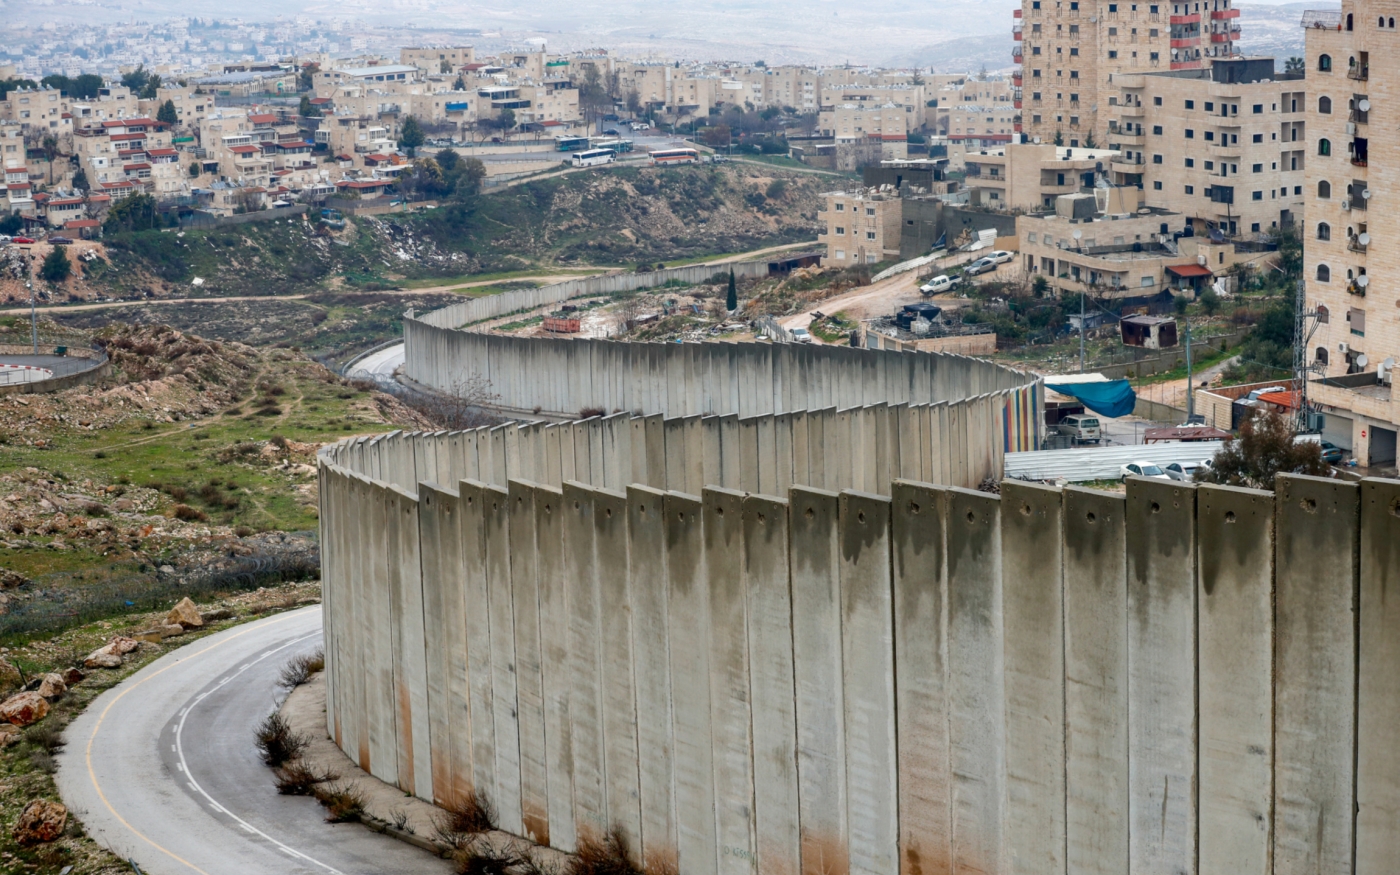 La colonie israélienne de Pisgat Zeev et le camp de réfugiés palestiniens de Shuafat, le 11 février 2020 (AFP)